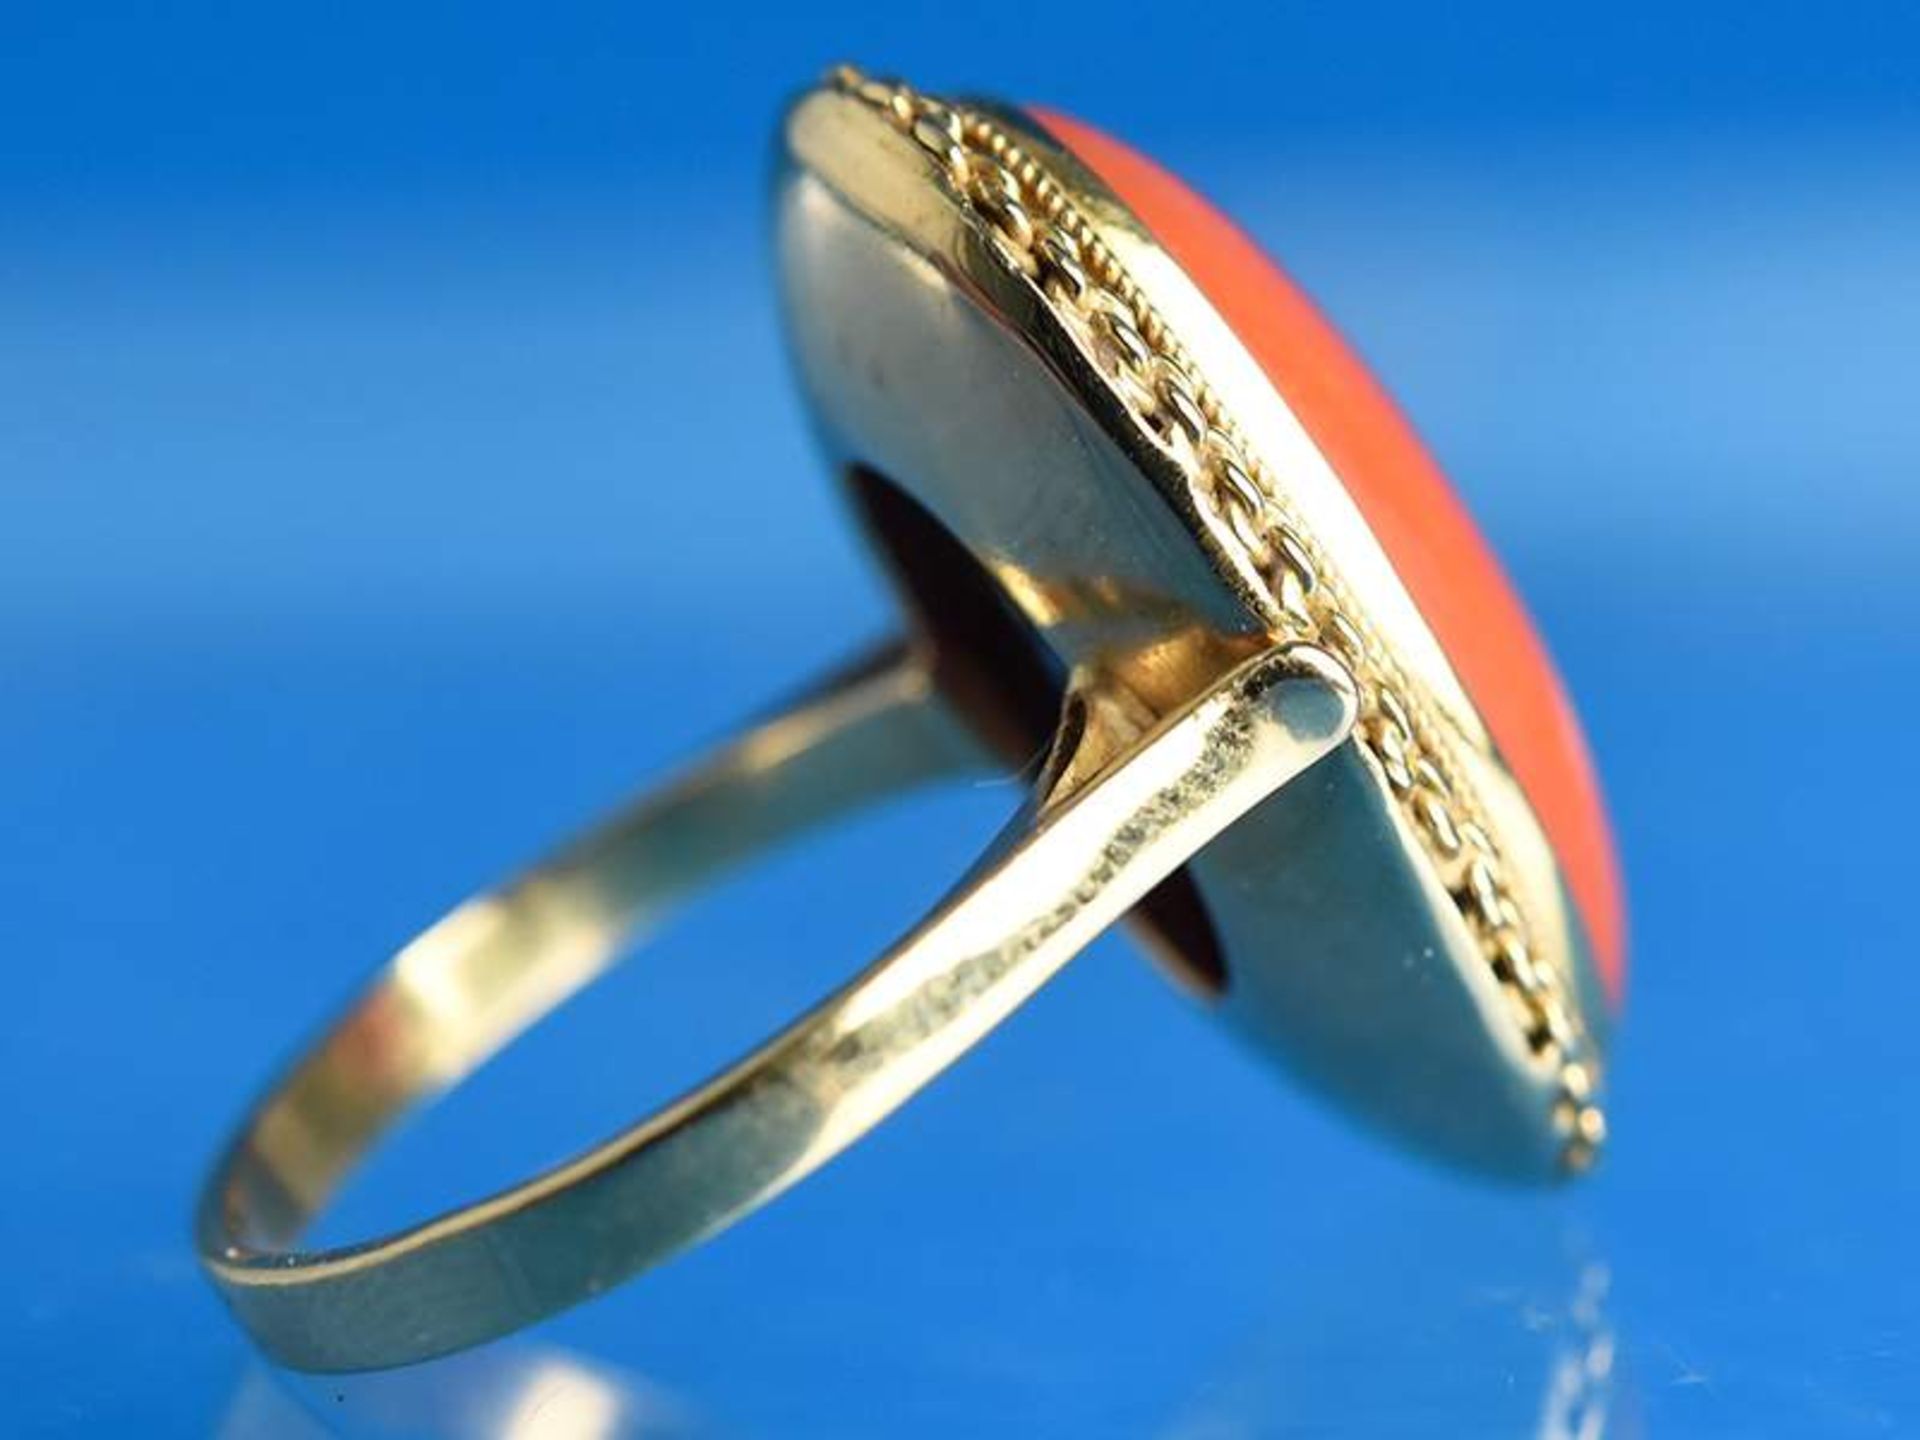 Ring mit Korallencabochon, 20. Jh.
750/-Gelbgold. Gesamtgewicht ca. 5,8 g. Ovaler Korallencabochon - Image 2 of 4